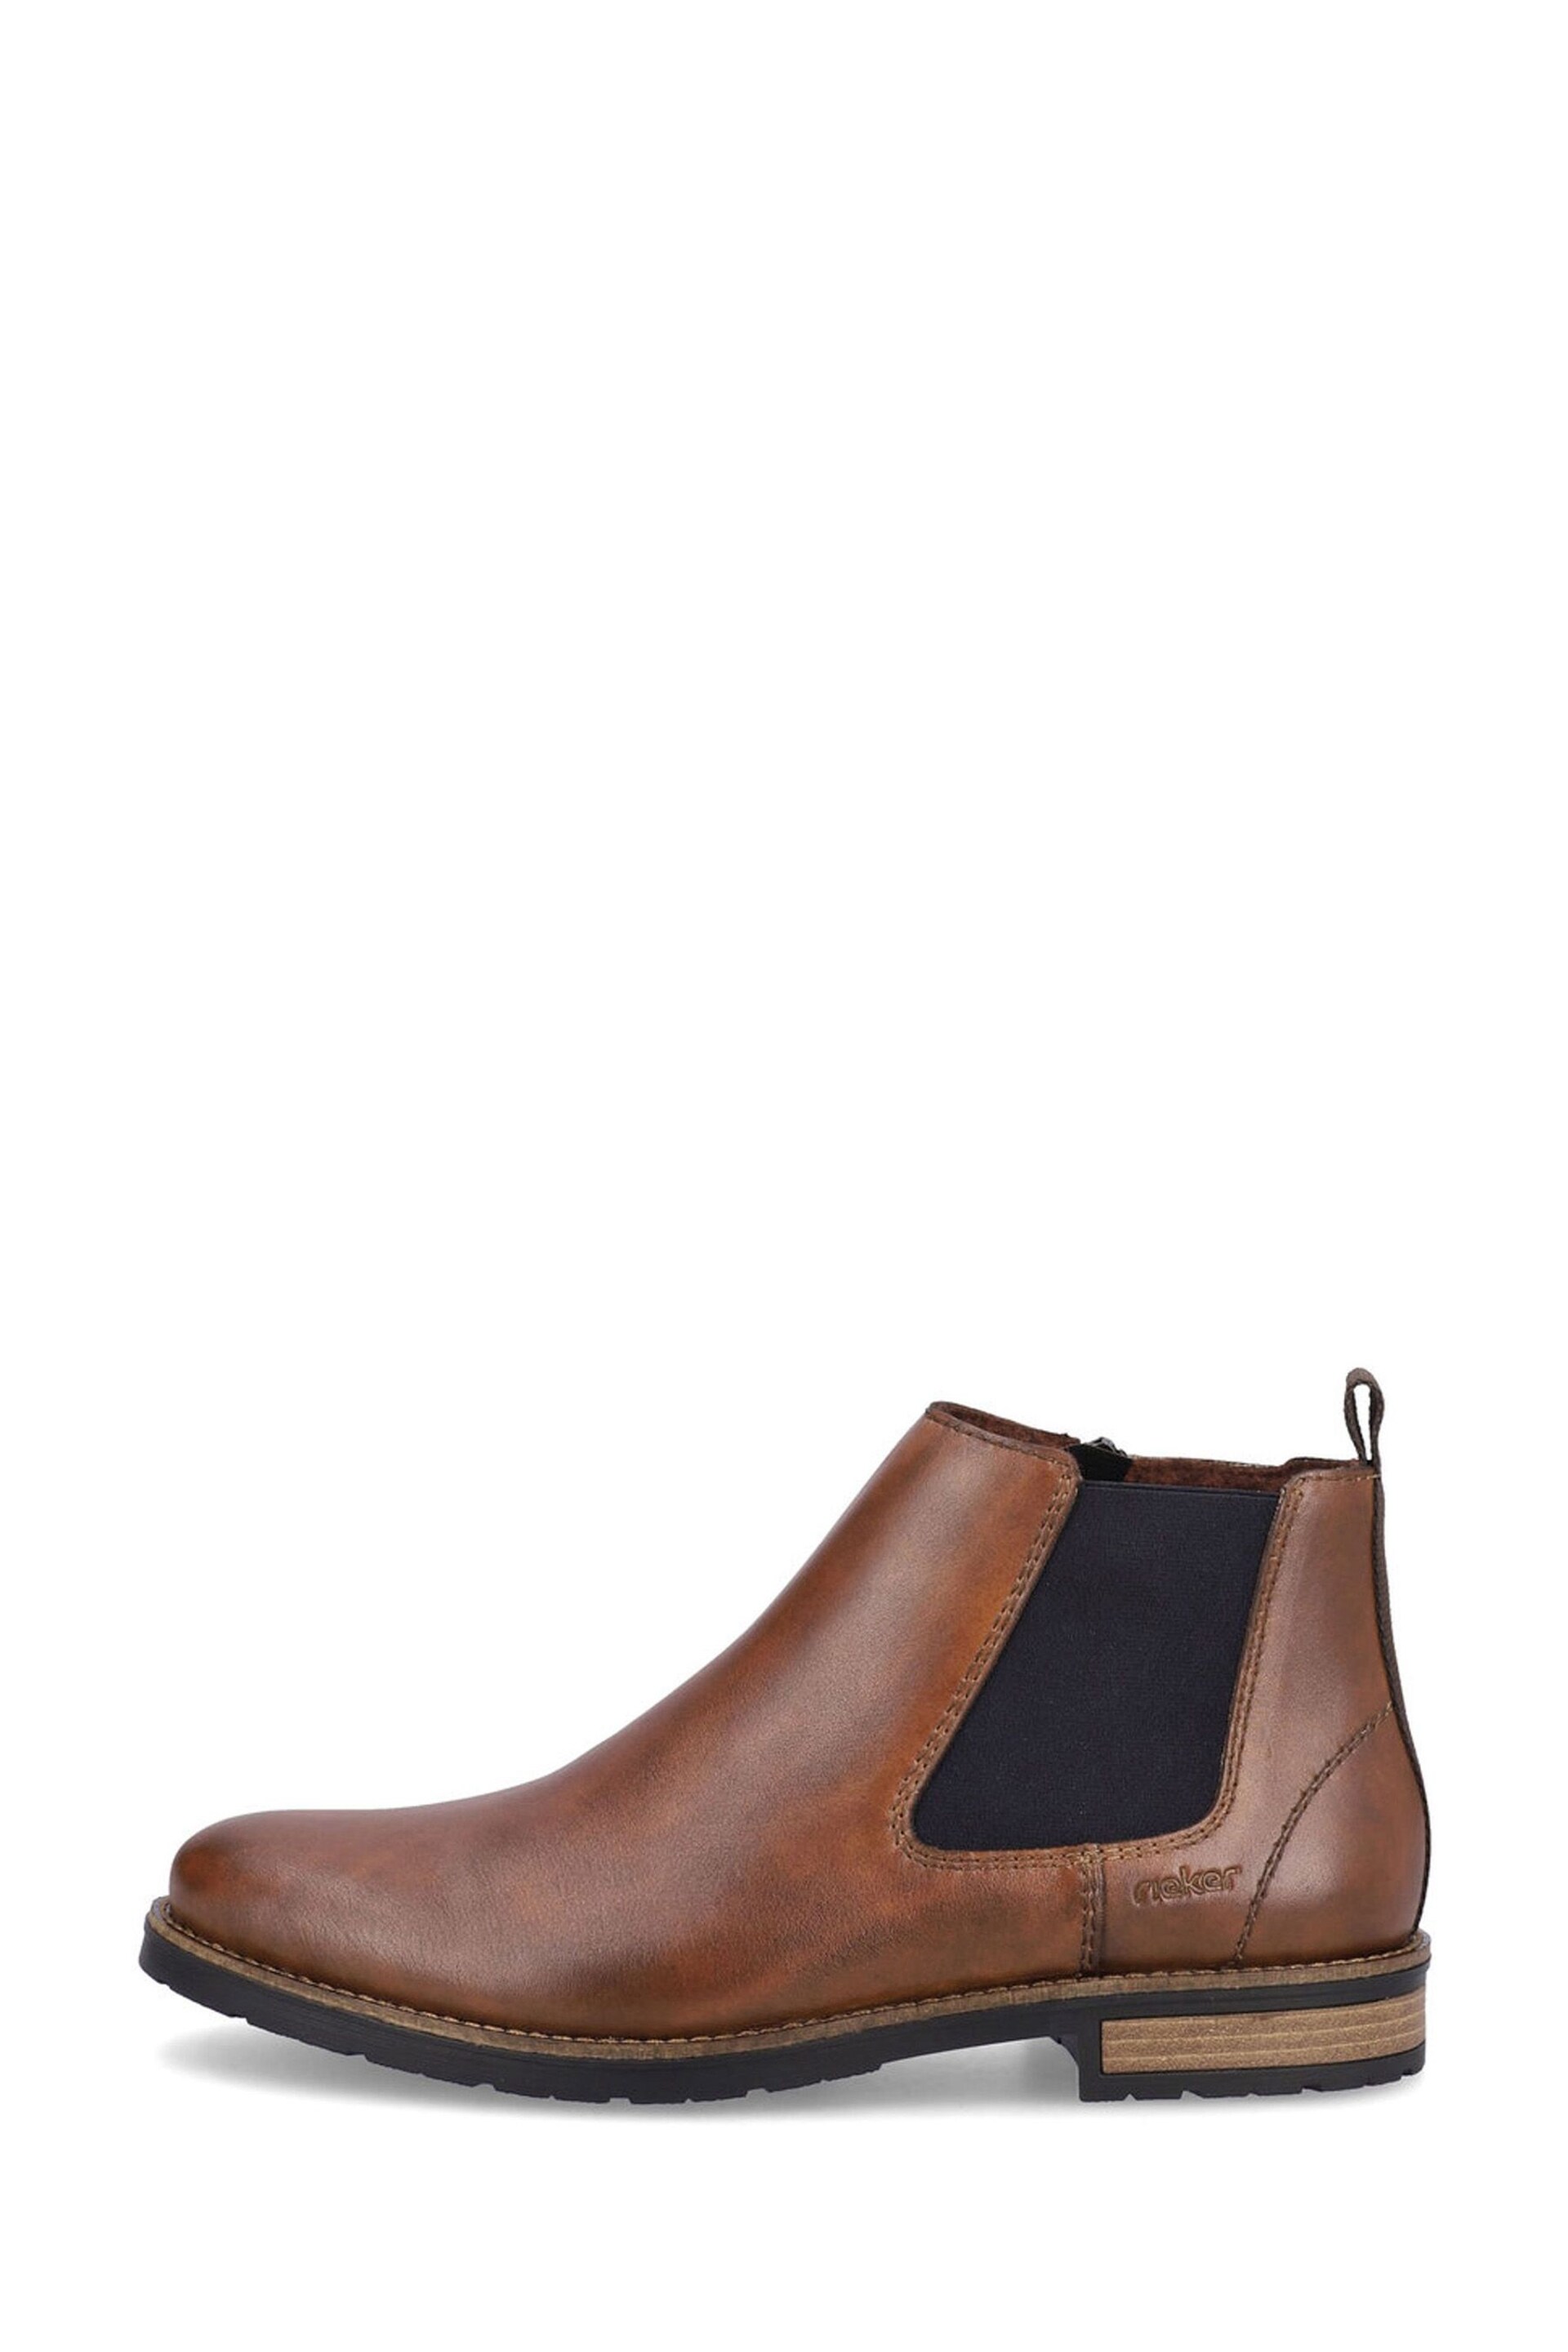 Rieker Mens Zipper Brown Boots - Image 2 of 9